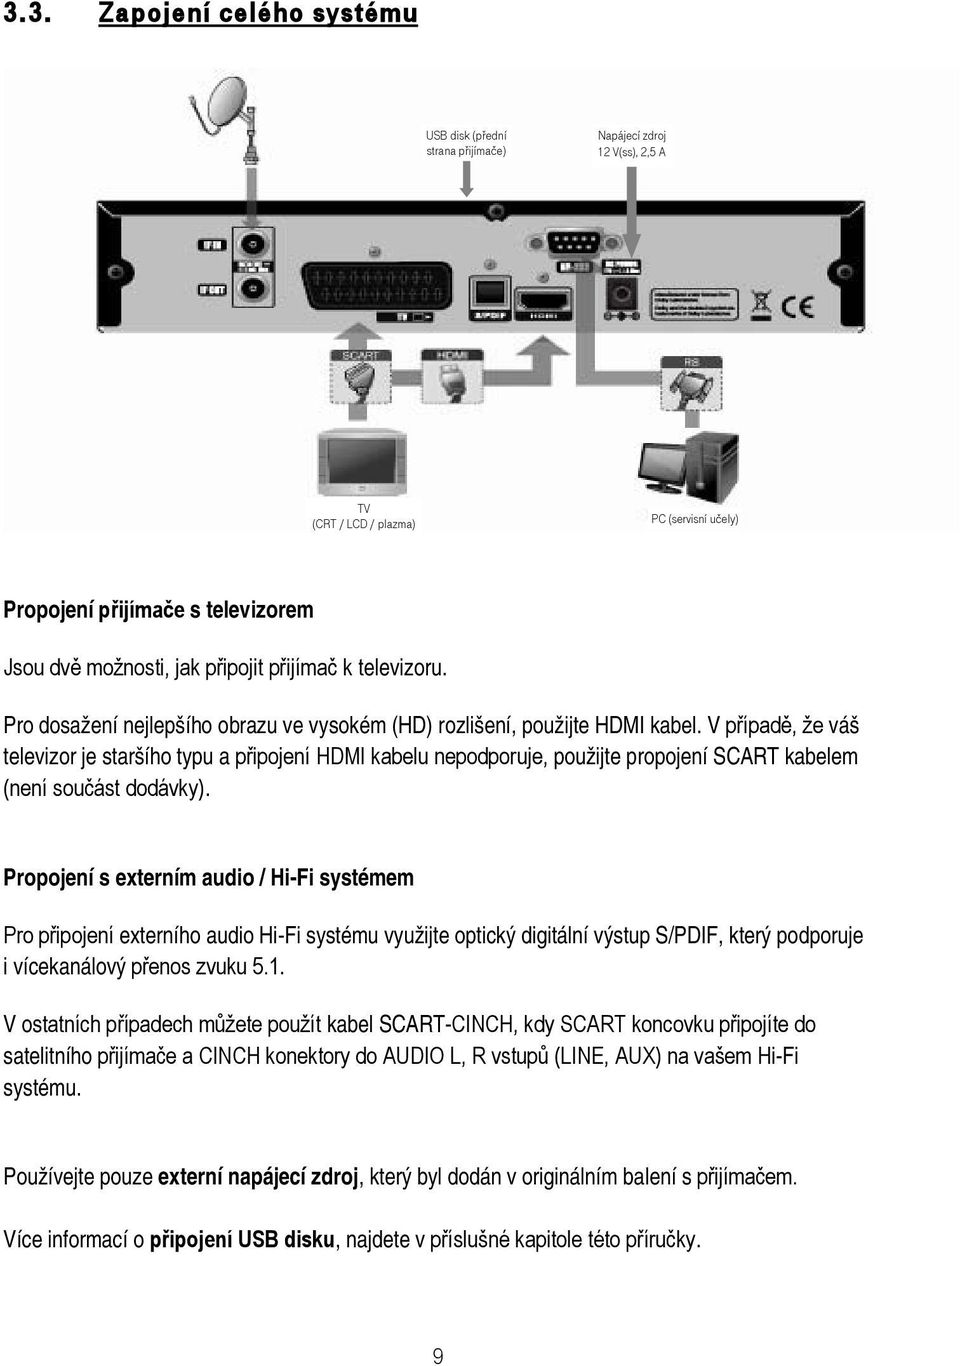 V případě, že váš televizor je staršího typu a připojení HDMI kabelu nepodporuje, použijte propojení SCART kabelem (není součást dodávky).